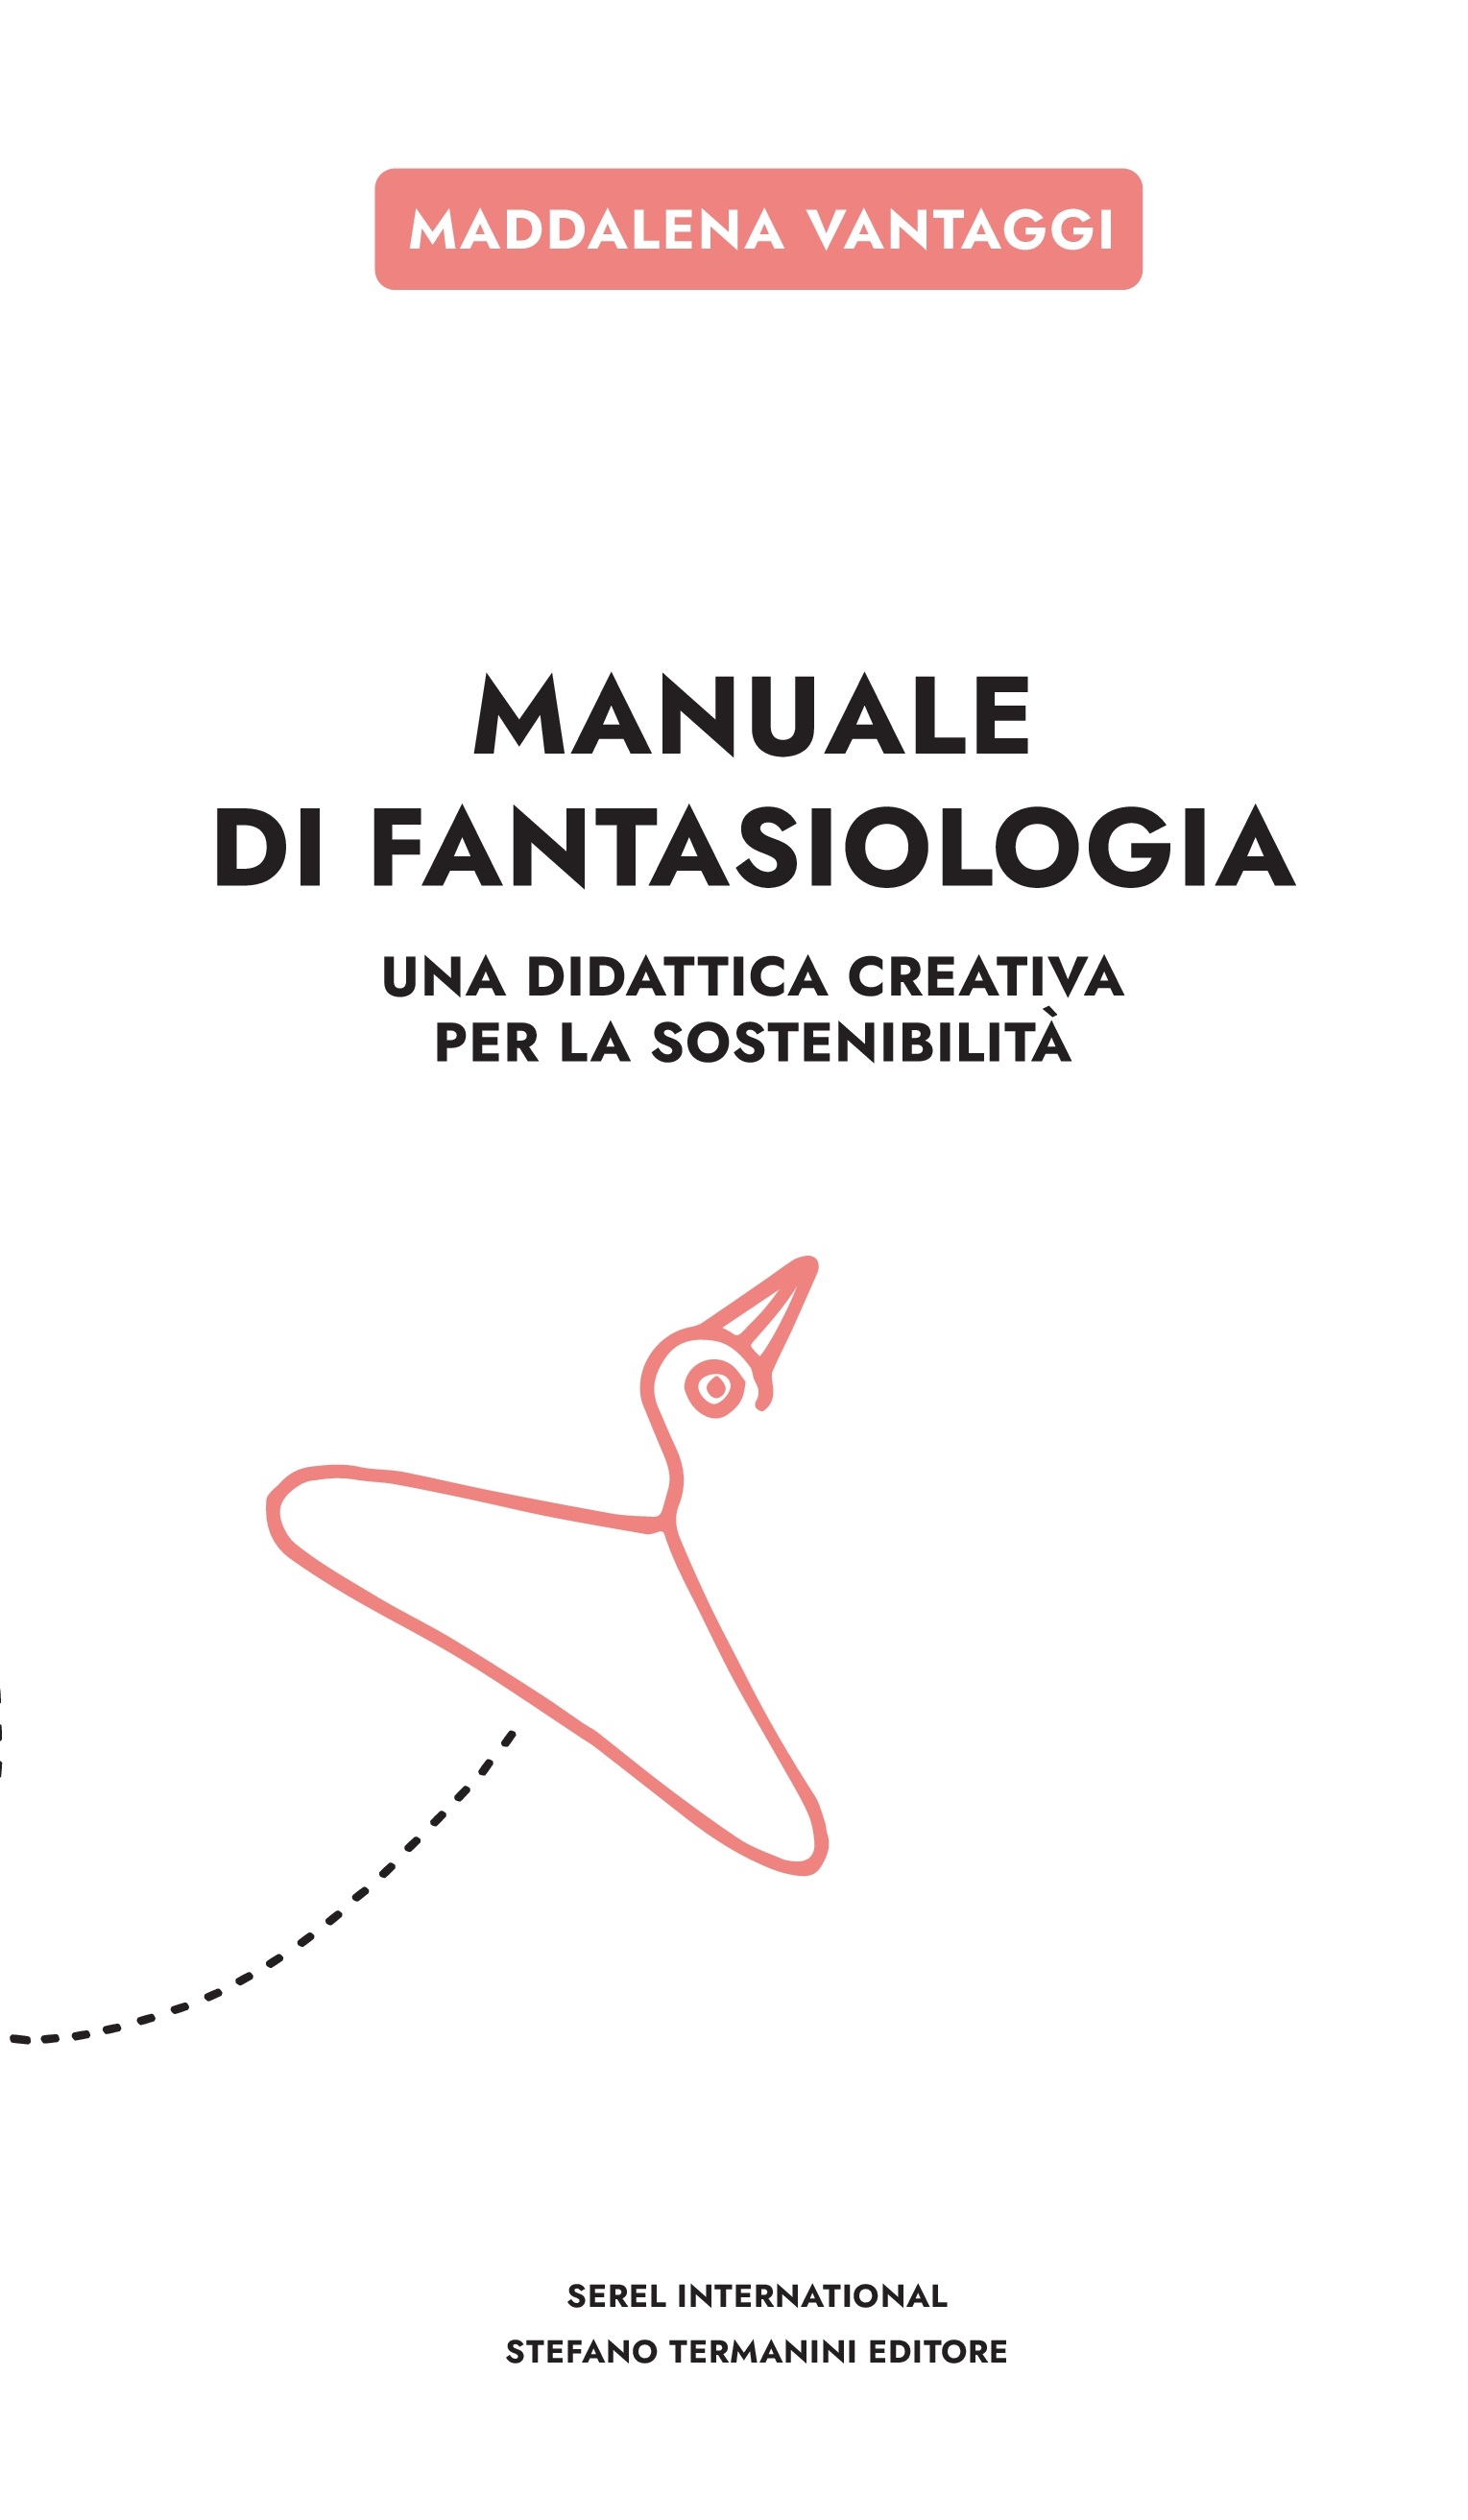 Manuale di Fantasiologia: finalmente è uscito il nuovo libro di Maddalena Vantaggi